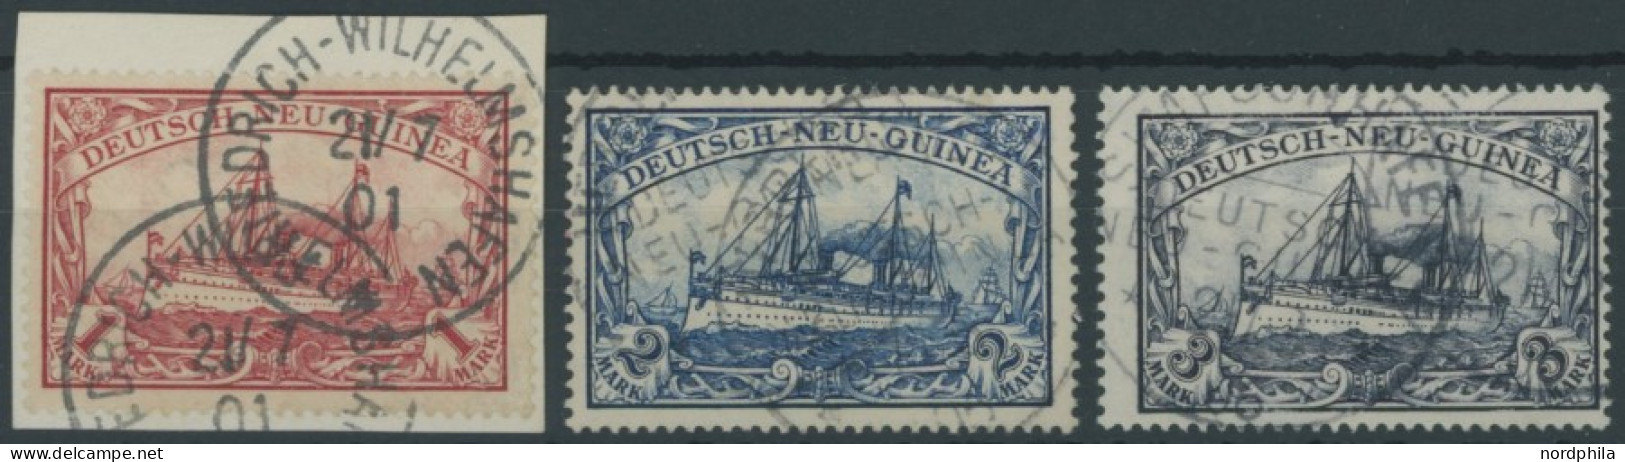 DEUTSCH-NEUGUINEA 16-18 O, 1901, 1 -3 M. Kaiseryacht, 3 Pachtwerte, Mi. 350.- - Duits-Nieuw-Guinea